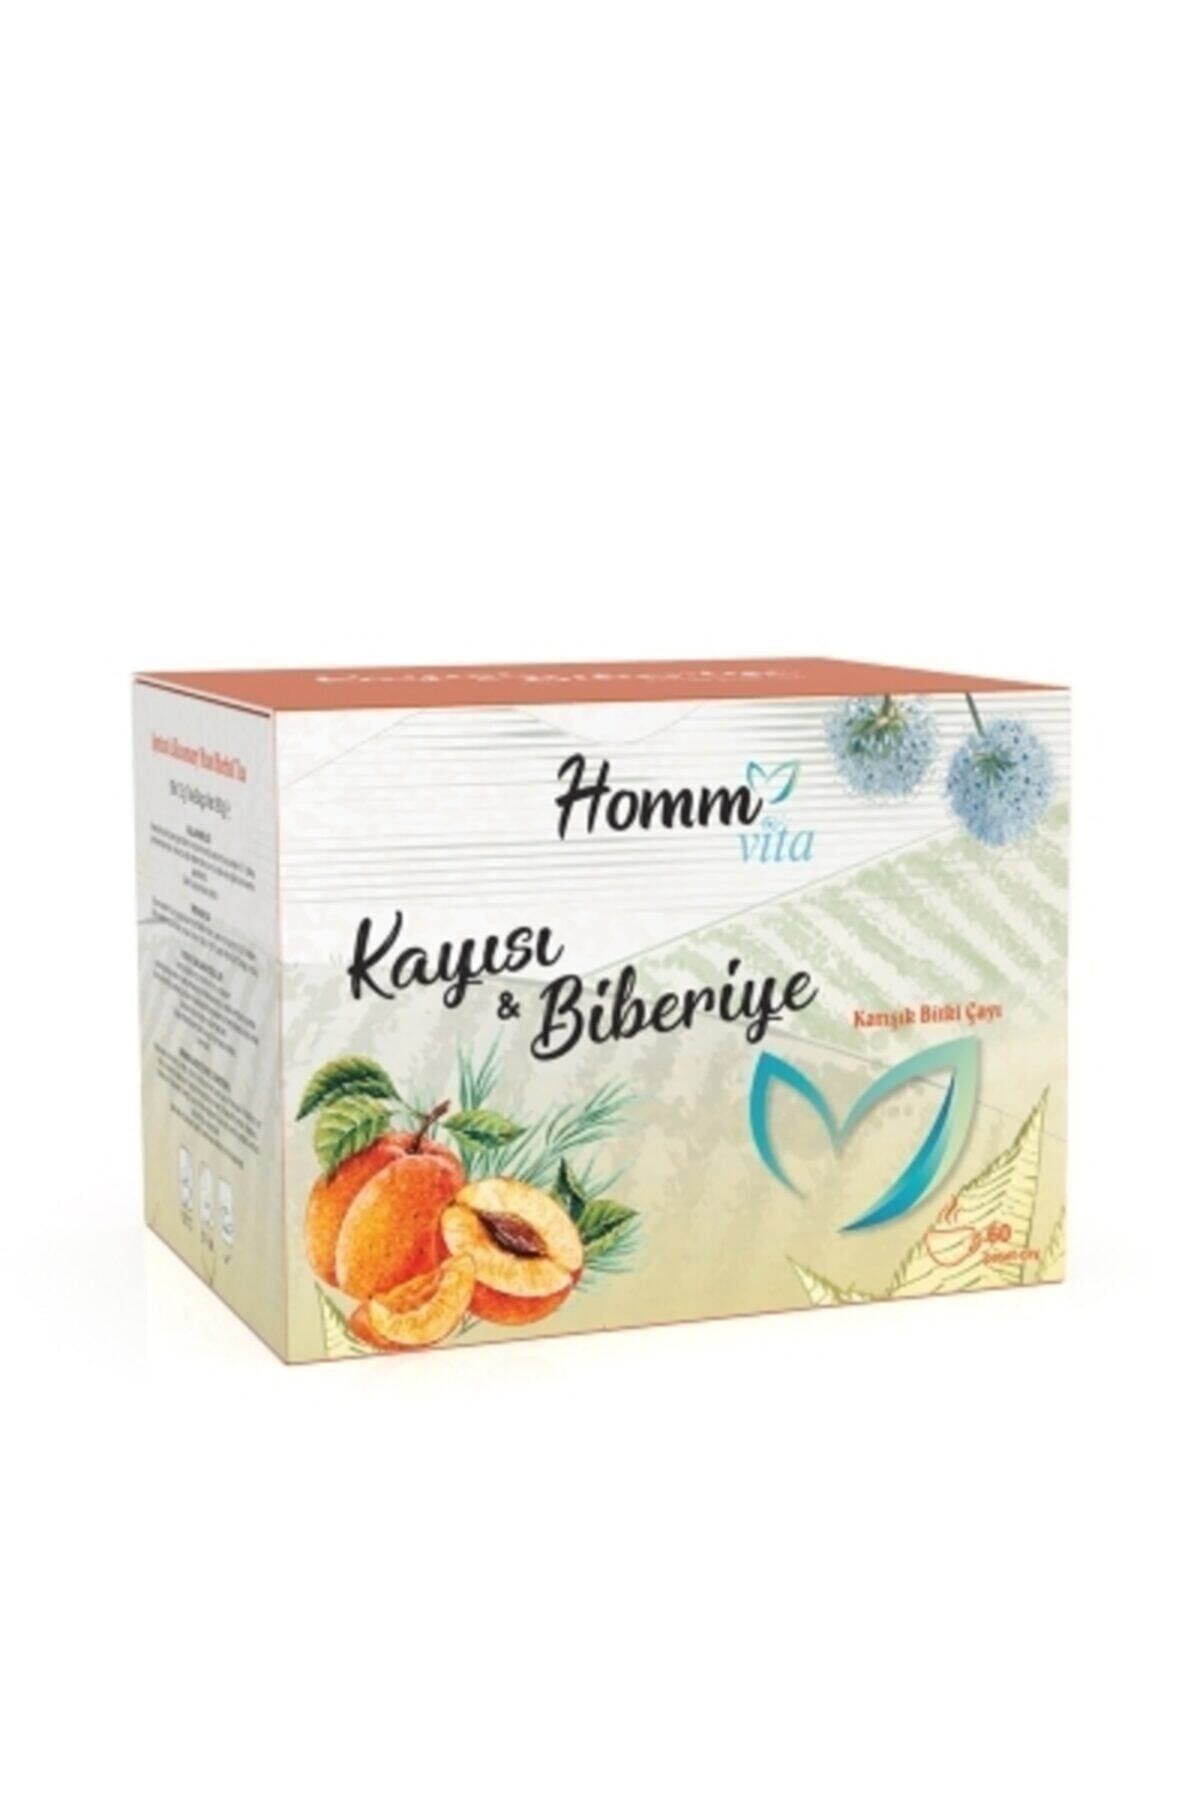 Homm Bitkisel Homm Kozmetik Homm Vita Kayısı & Biberiye Karışık Bitki Çayı 60 Poşet Kayısı&biberiye